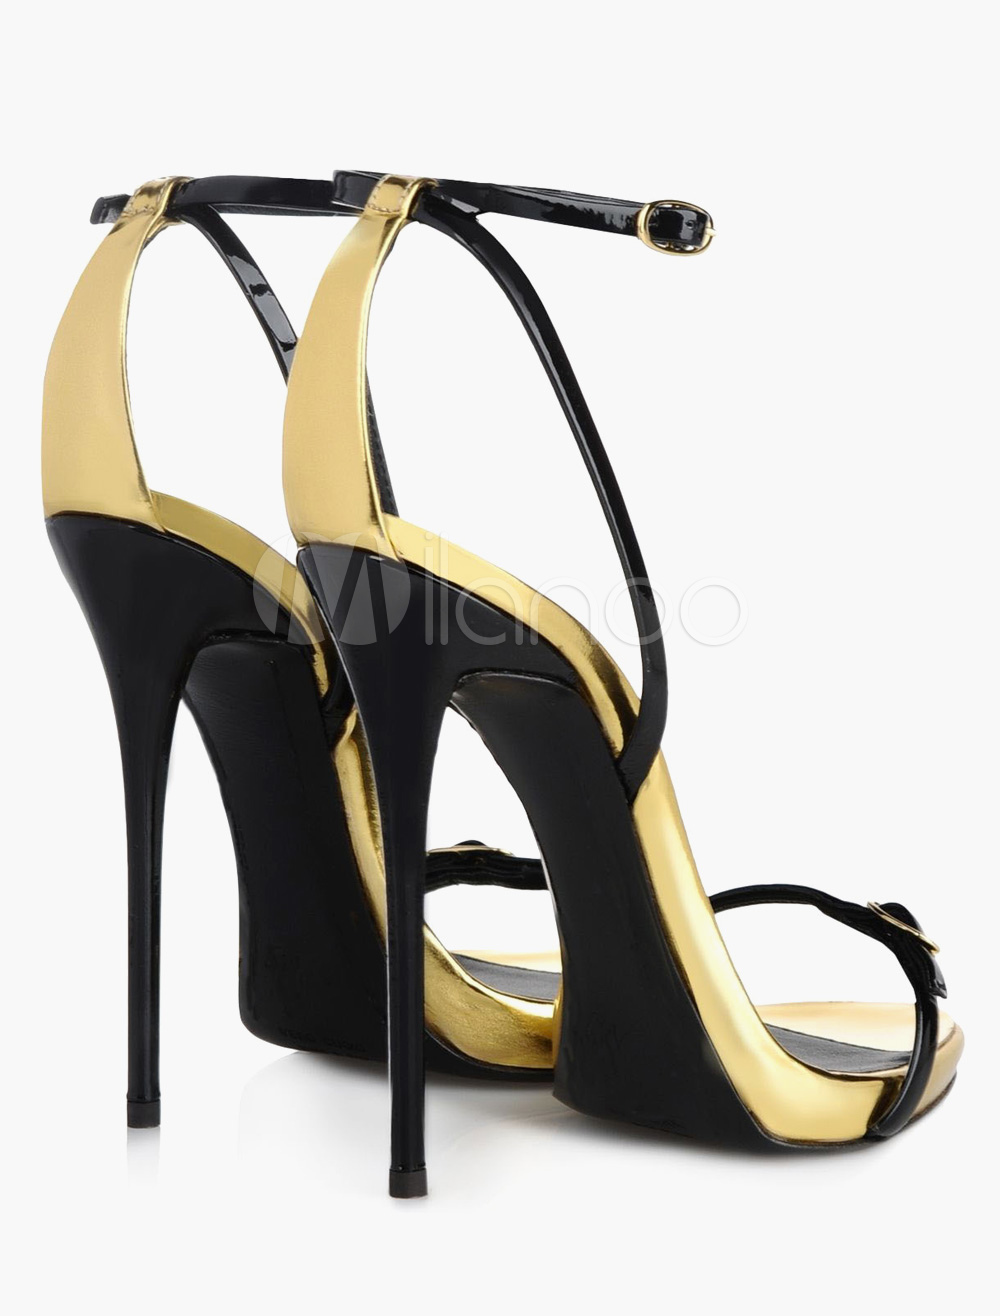 High Heel Sandals Black Ankle Strap Sandals Patent Dress Sandals For ...